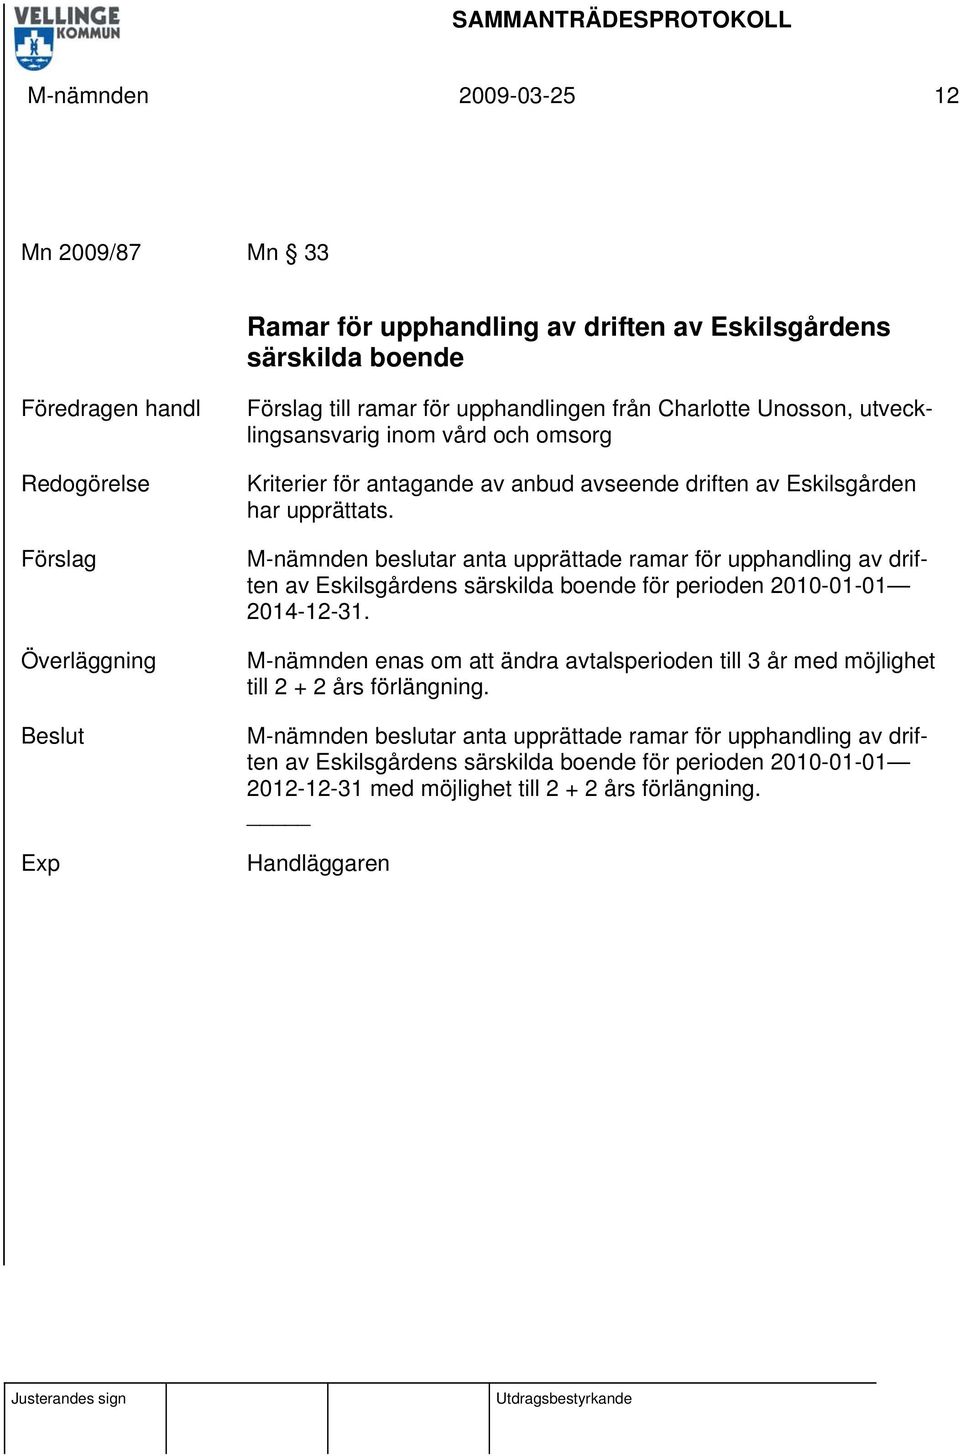 M-nämnden beslutar anta upprättade ramar för upphandling av driften av Eskilsgårdens särskilda boende för perioden 2010-01-01 2014-12-31.